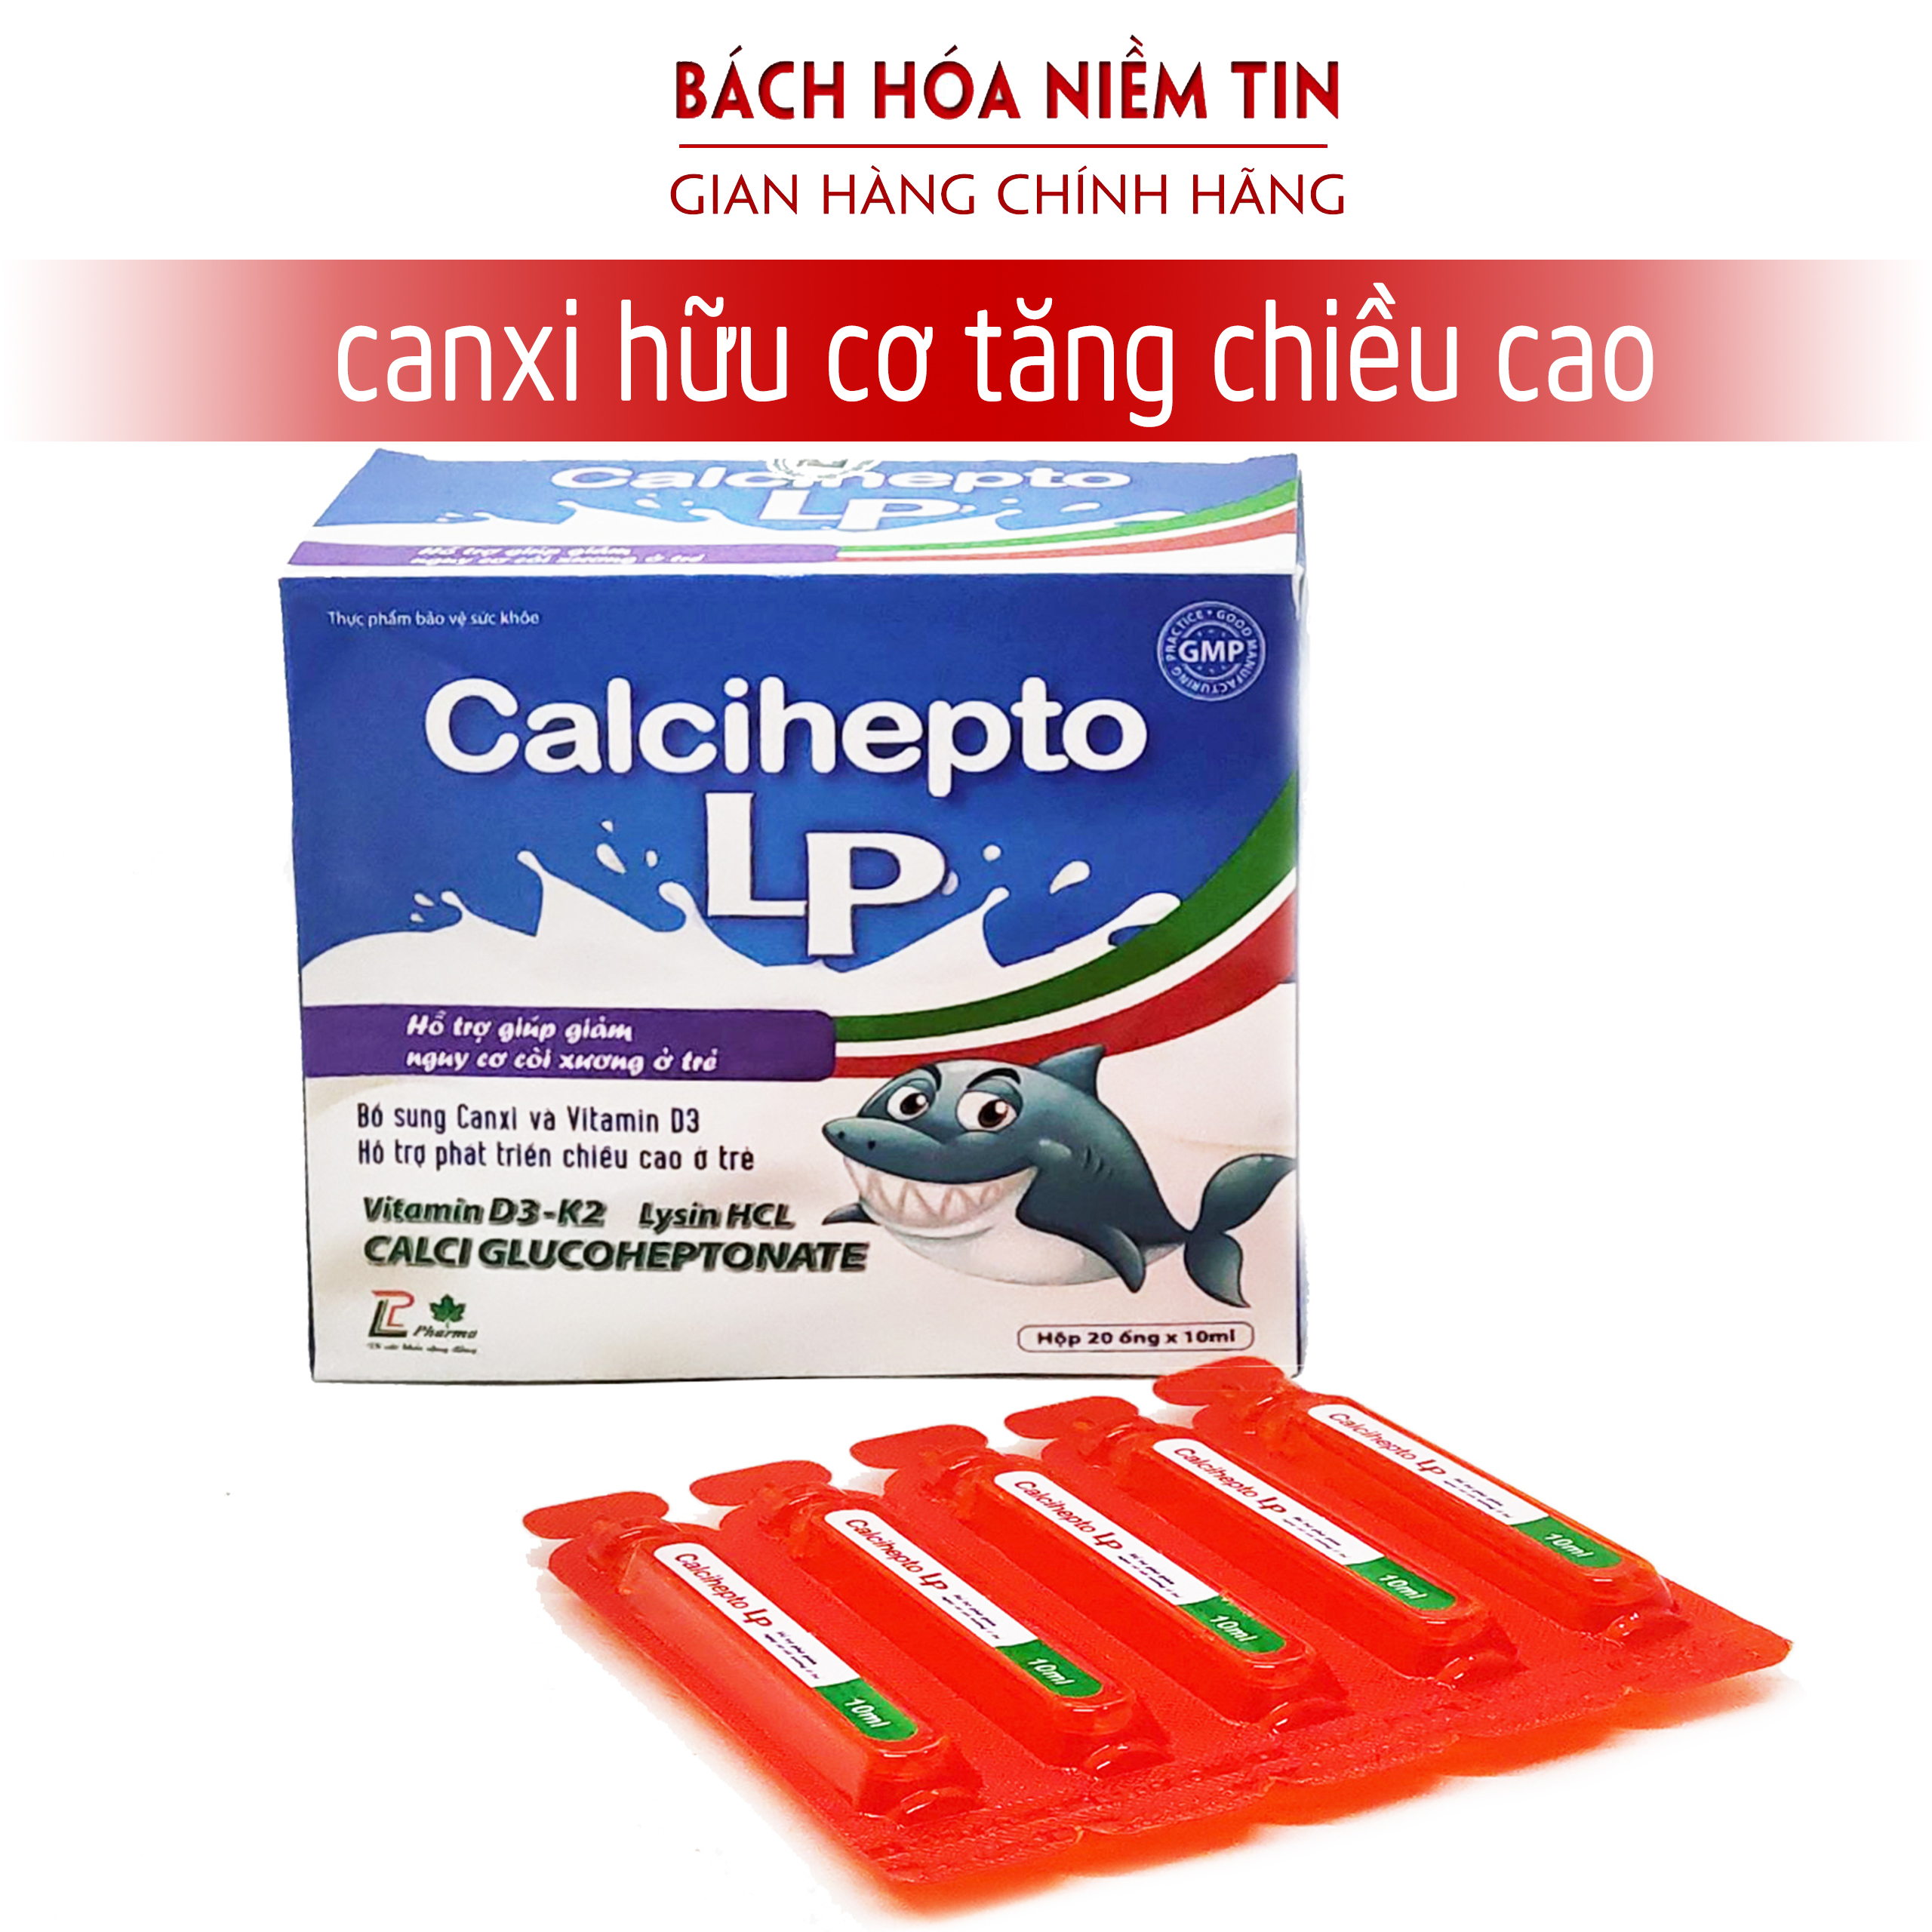 Siro canxi hữu cơ, vitamin D3 cho bé từ 6 tháng tuổi - Calcihepto LP